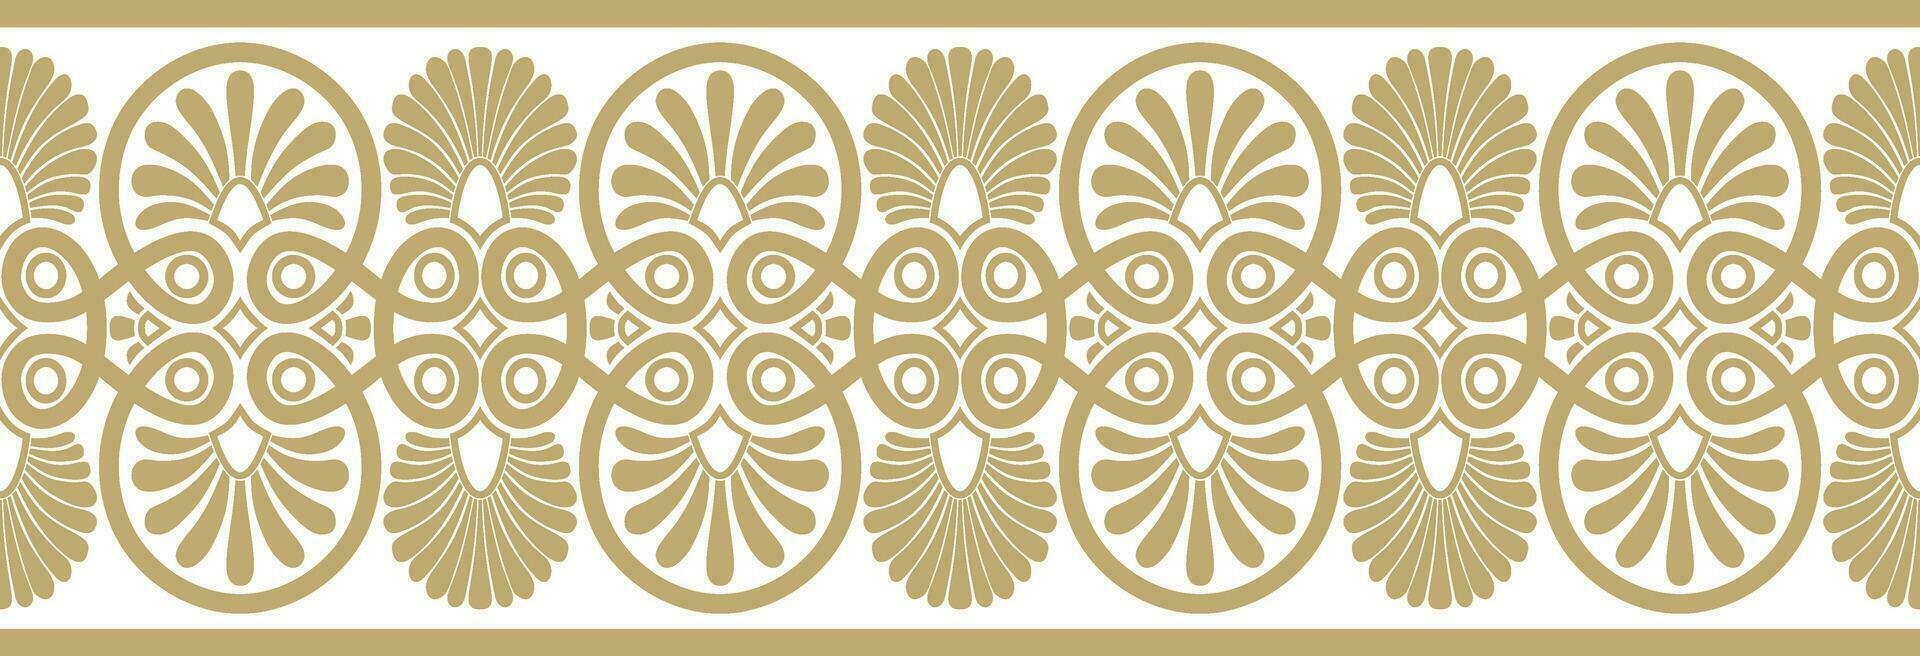 Vektor golden nahtlos Ornament von uralt Griechenland. klassisch endlos Muster Rahmen Rand römisch Reich